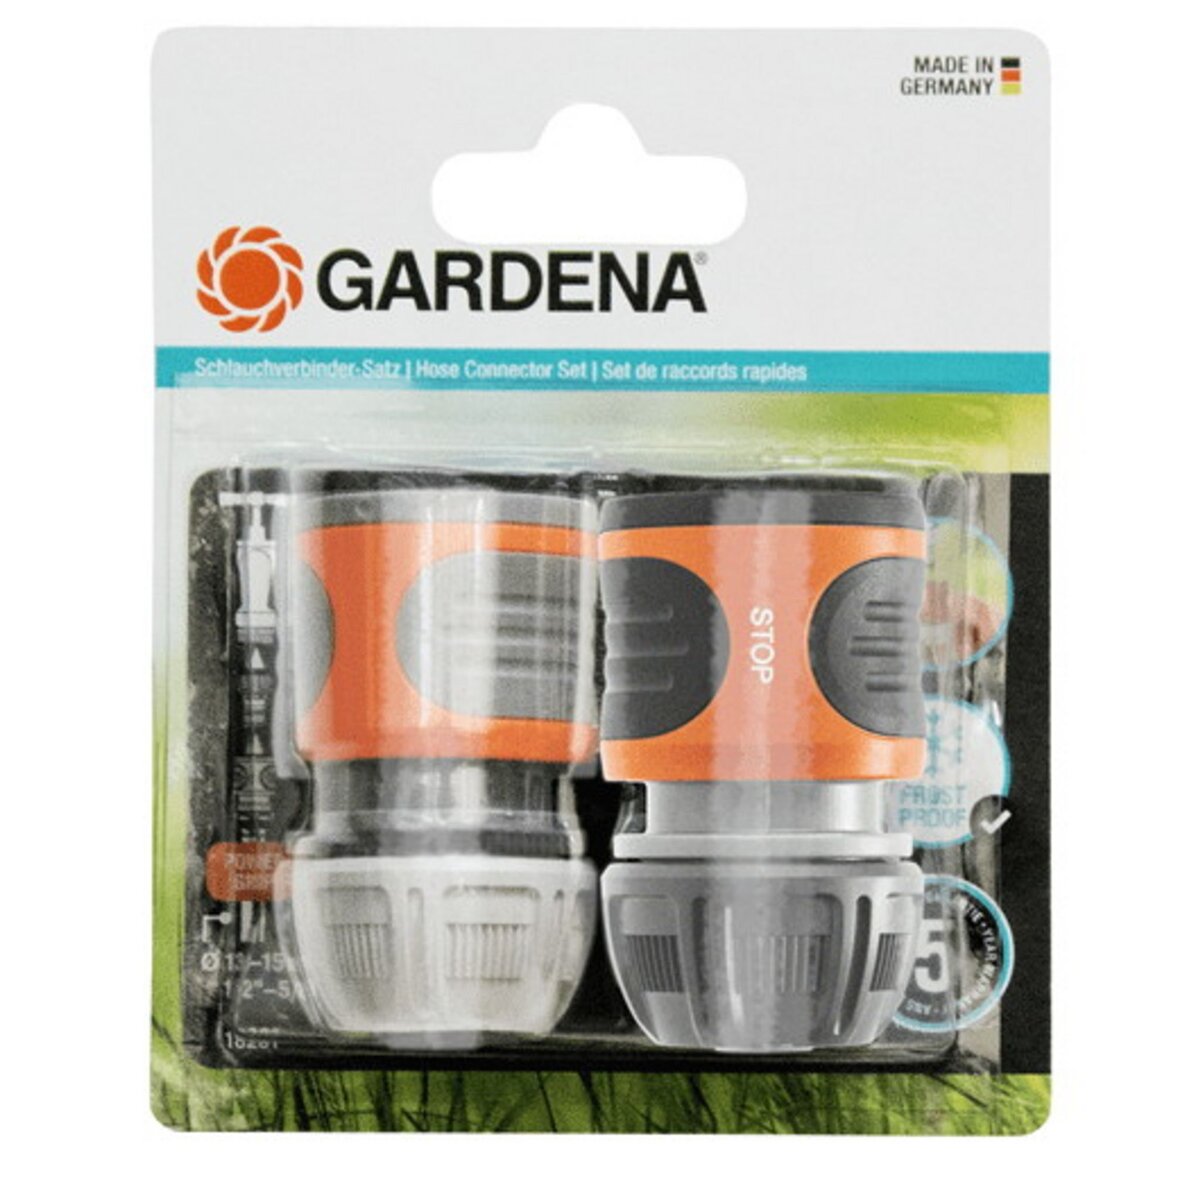 Gardena 2 raccords rapides pour tuyaux d'arrosage - 13 mm 1/2 - 15 mm 5/8  pas cher 